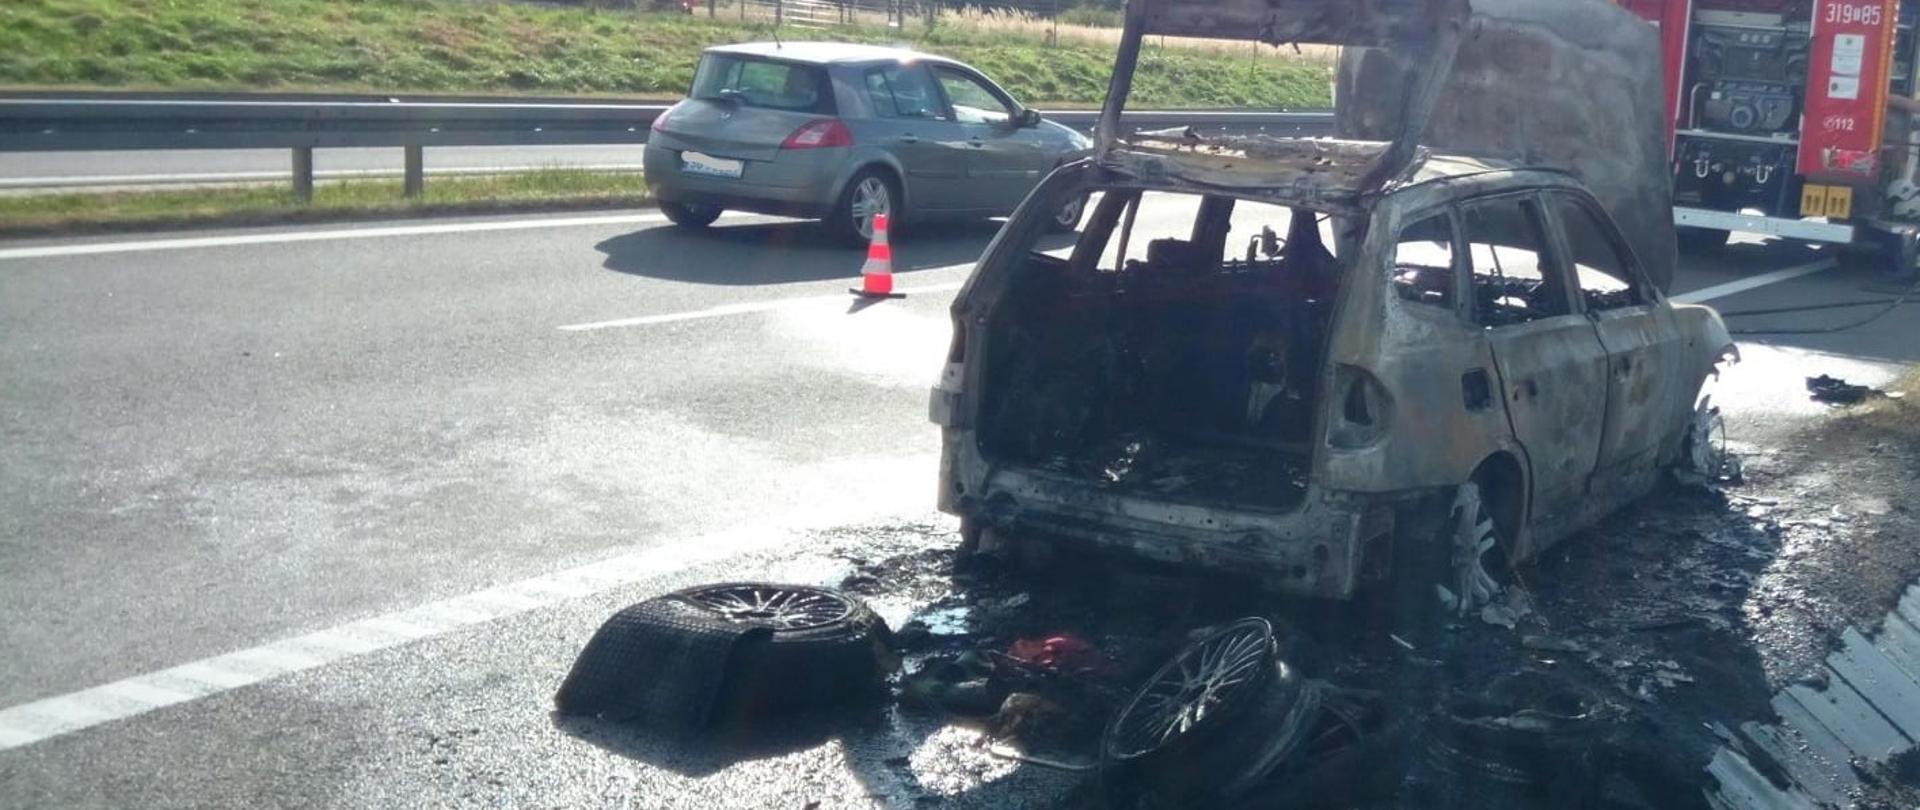 Na zdjęciu, po prawej stronie stoi spalony samochód osobowy, a przed nim samochód pożarniczy. Sąsiednim pasem jedzie przypadkowe auto.